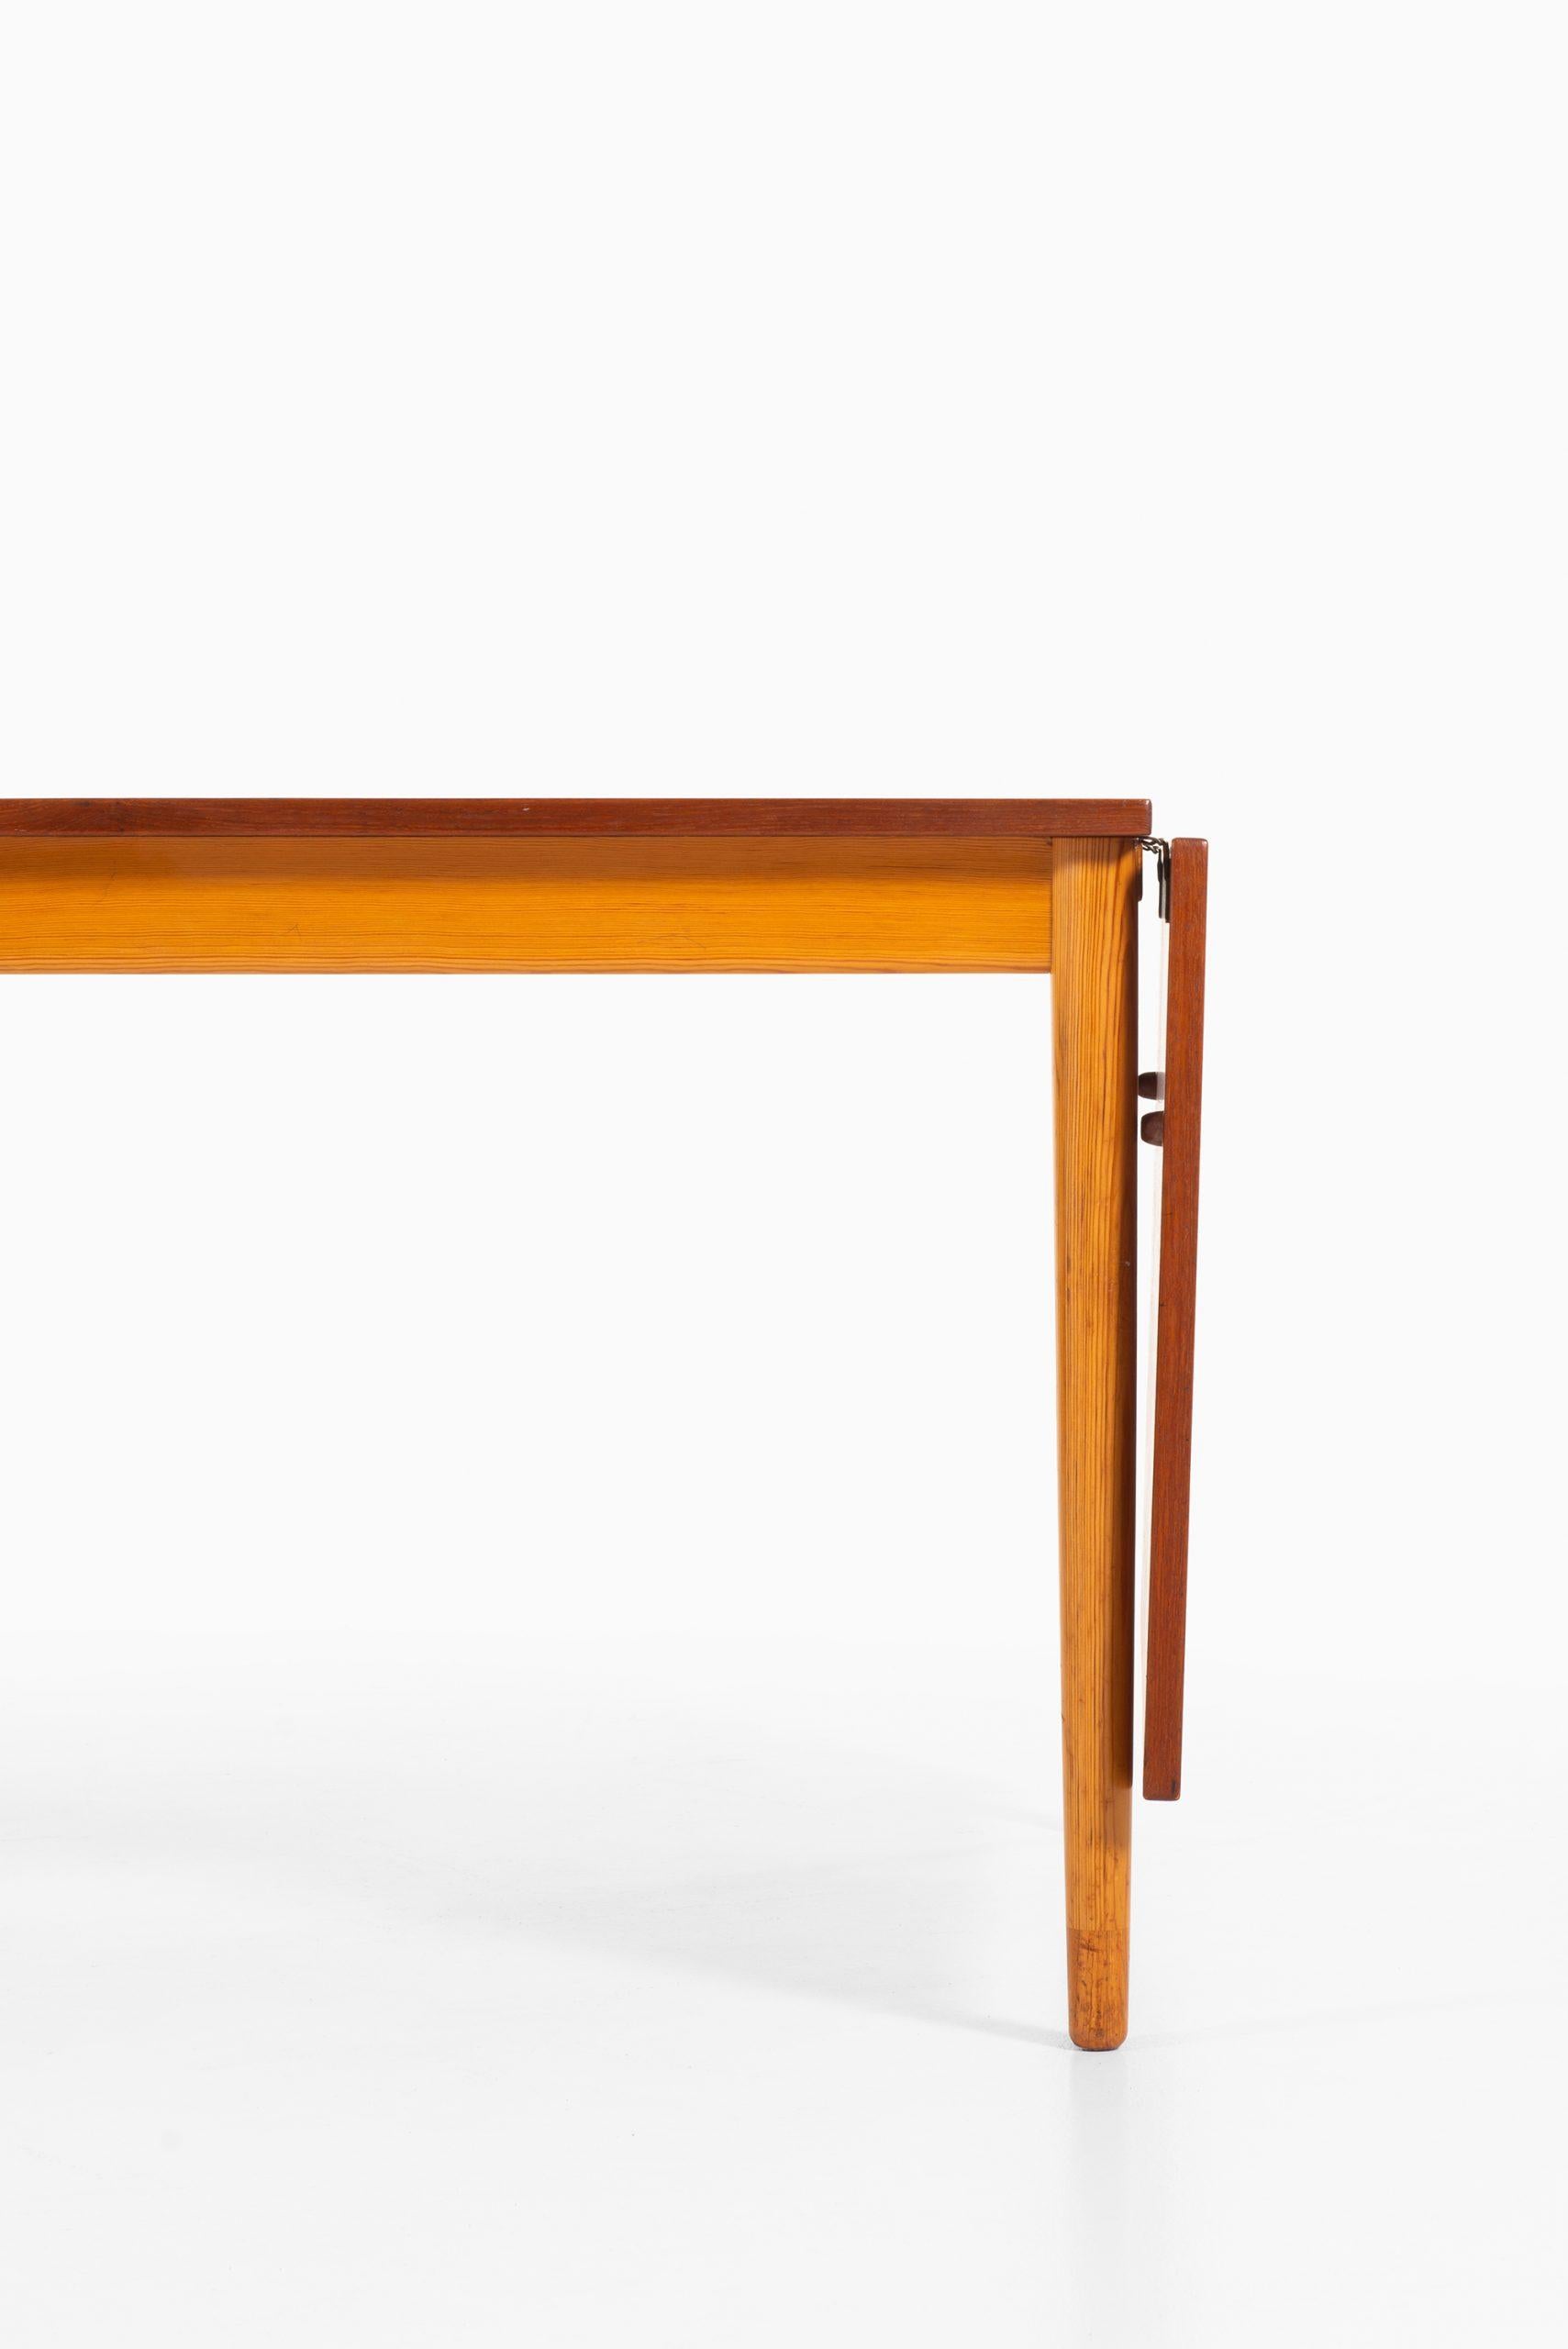 Rare dining table designed by Børge Mogensen. Produced by Svensk Fur in Sweden.
Measures: Width 126-250 cm.